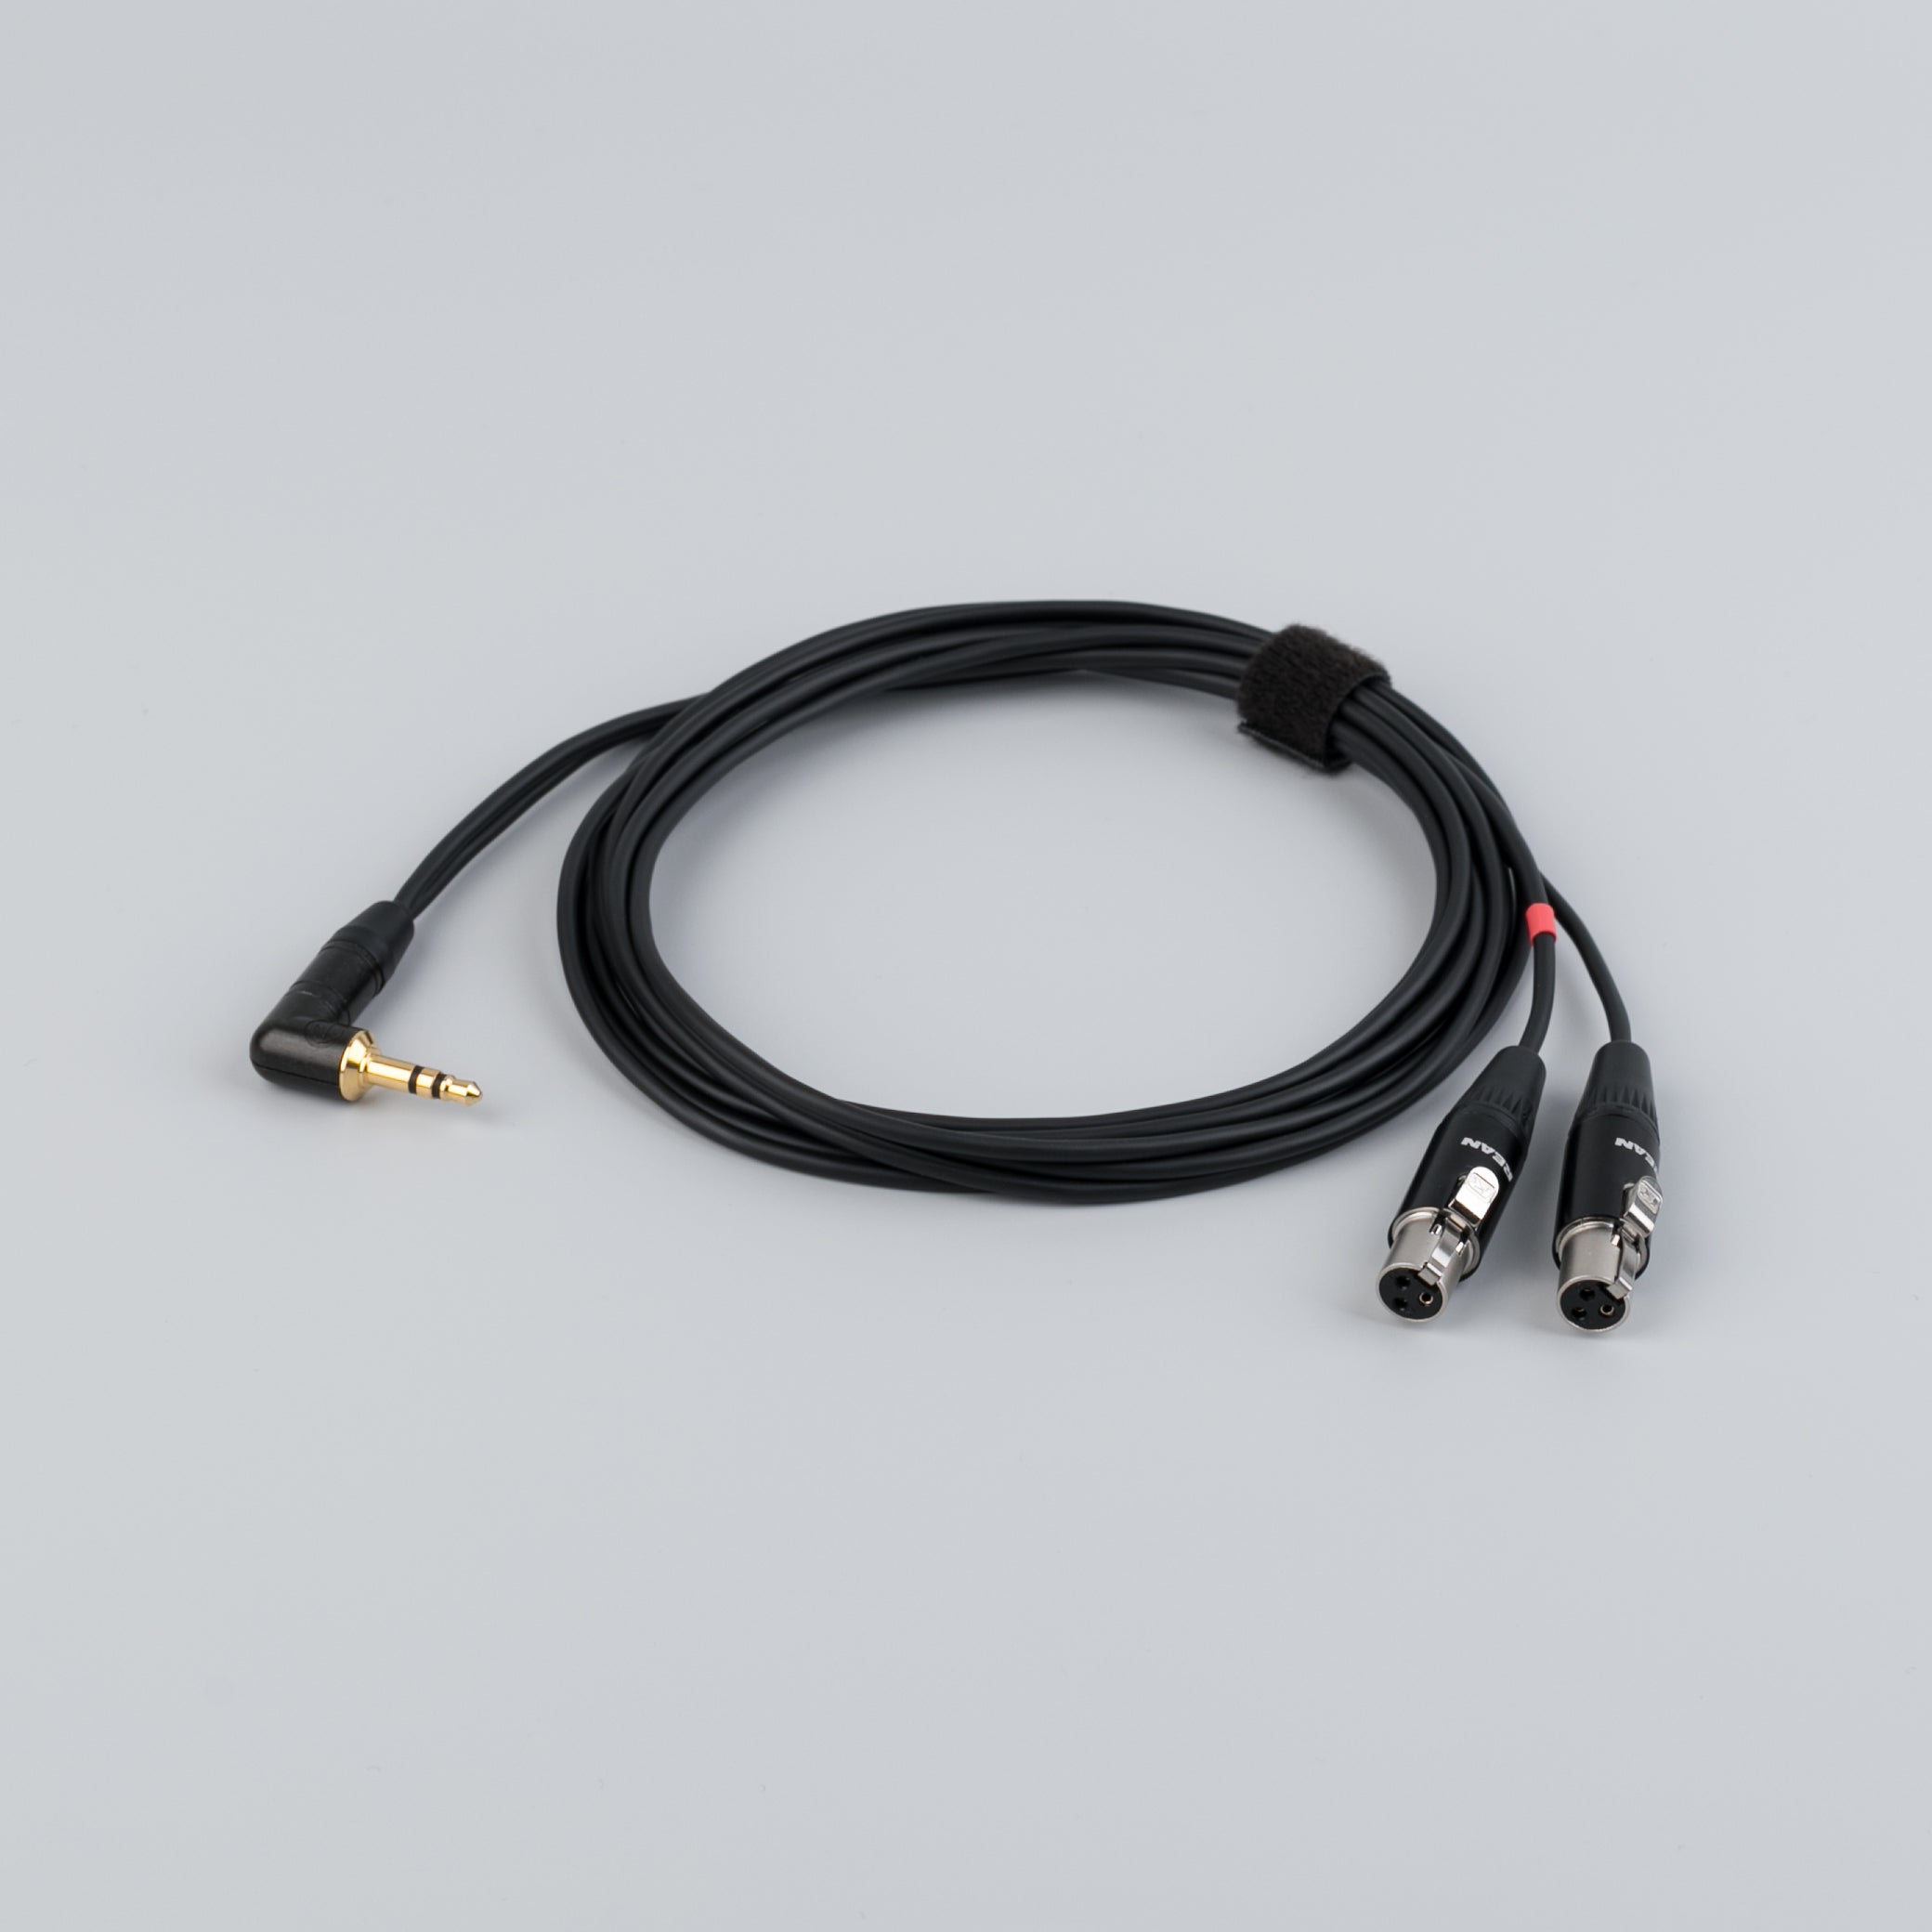 Uši (minijack) cable